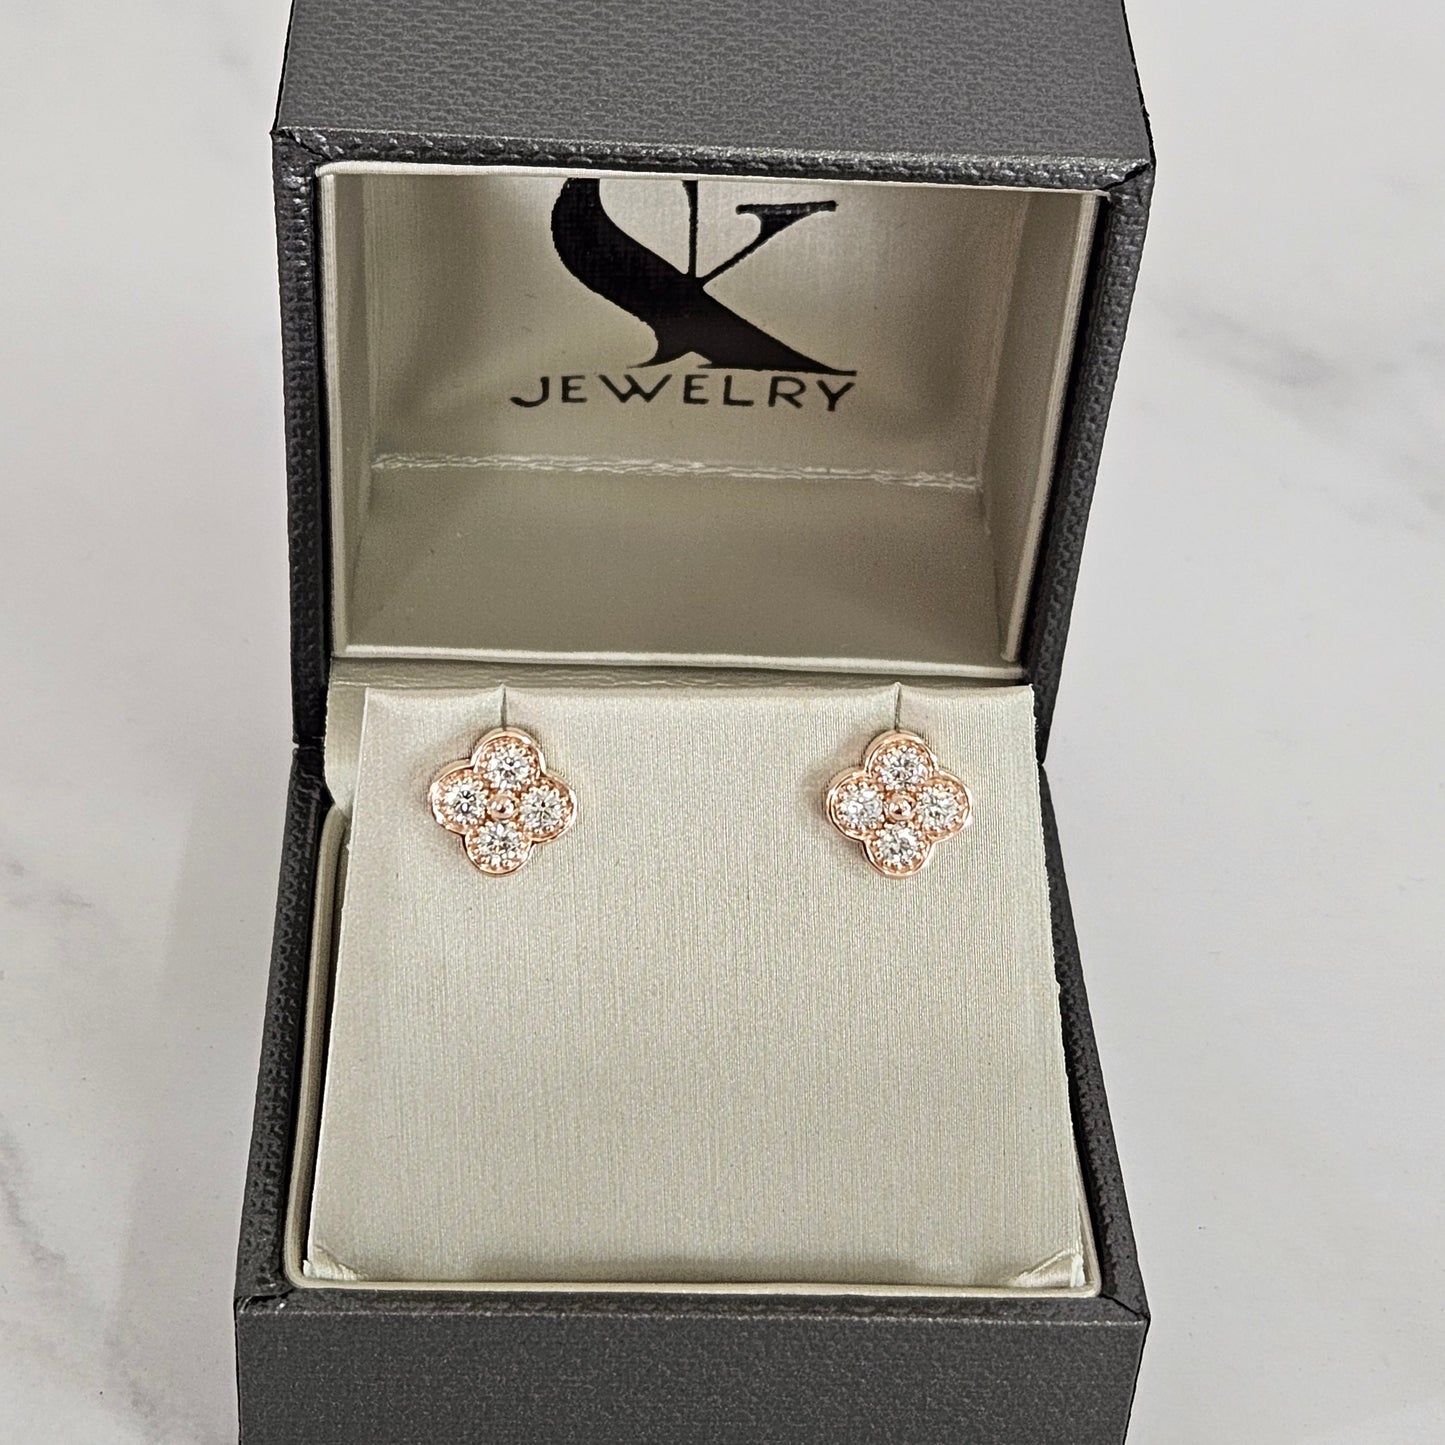 Diamond Clover Earrings/14K,18K gold 9.7mm Clover Classic Dainty Cluster Stud Earrings/Natural Diamond Stud Earring/Anniversary Gift